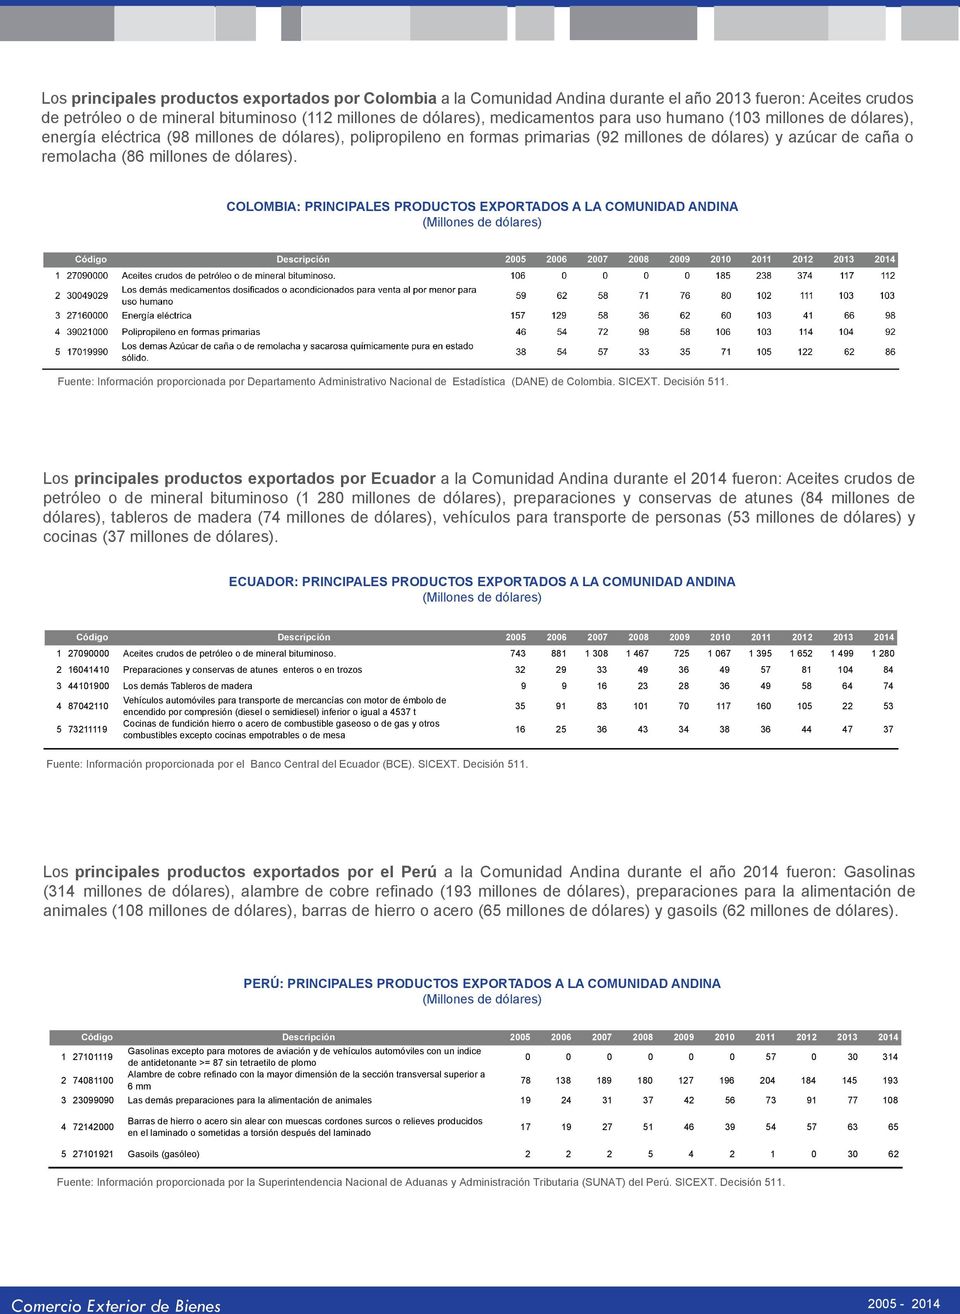 COLOMBIA: PRINCIPALES PRODUCTOS EXPORTADOS A LA COMUNIDAD ANDINA Fuente: Información proporcionada por Departamento Administrativo Nacional de Estadística (DANE) de Colombia. SICEXT. Decisión 511.